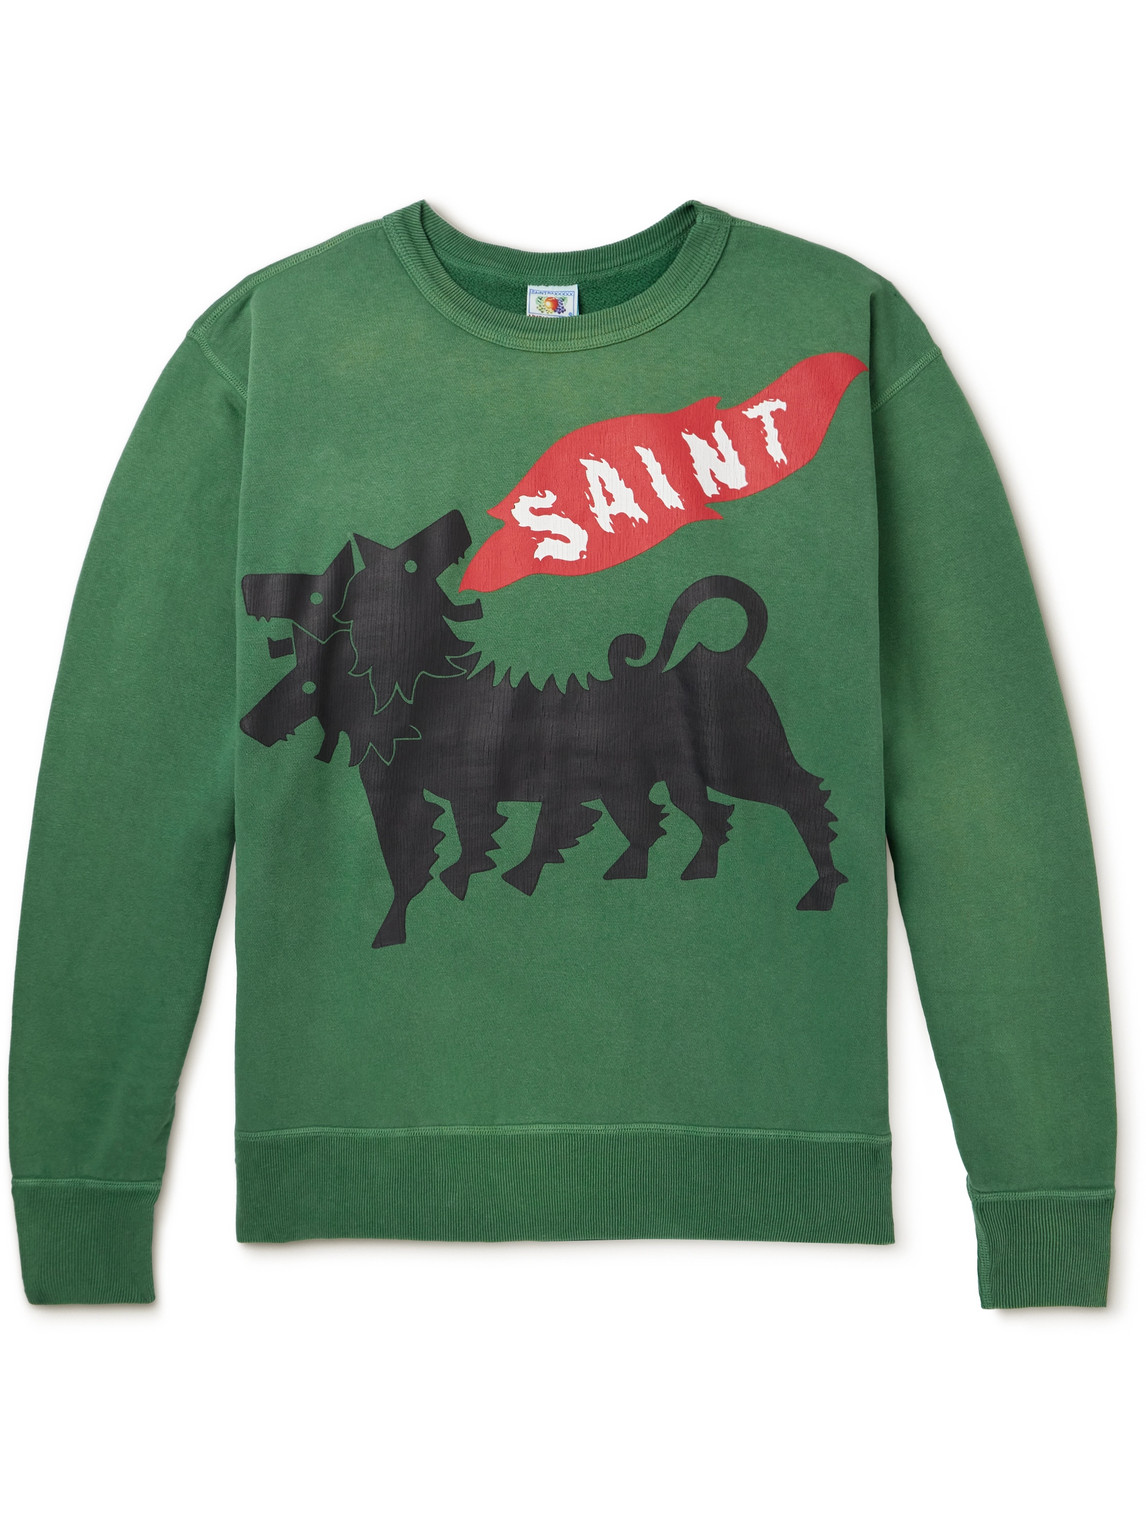 SAINT Mxxxxxx - Printed Cotton-Jersey Sweatshirt - Men - Green - M von SAINT Mxxxxxx